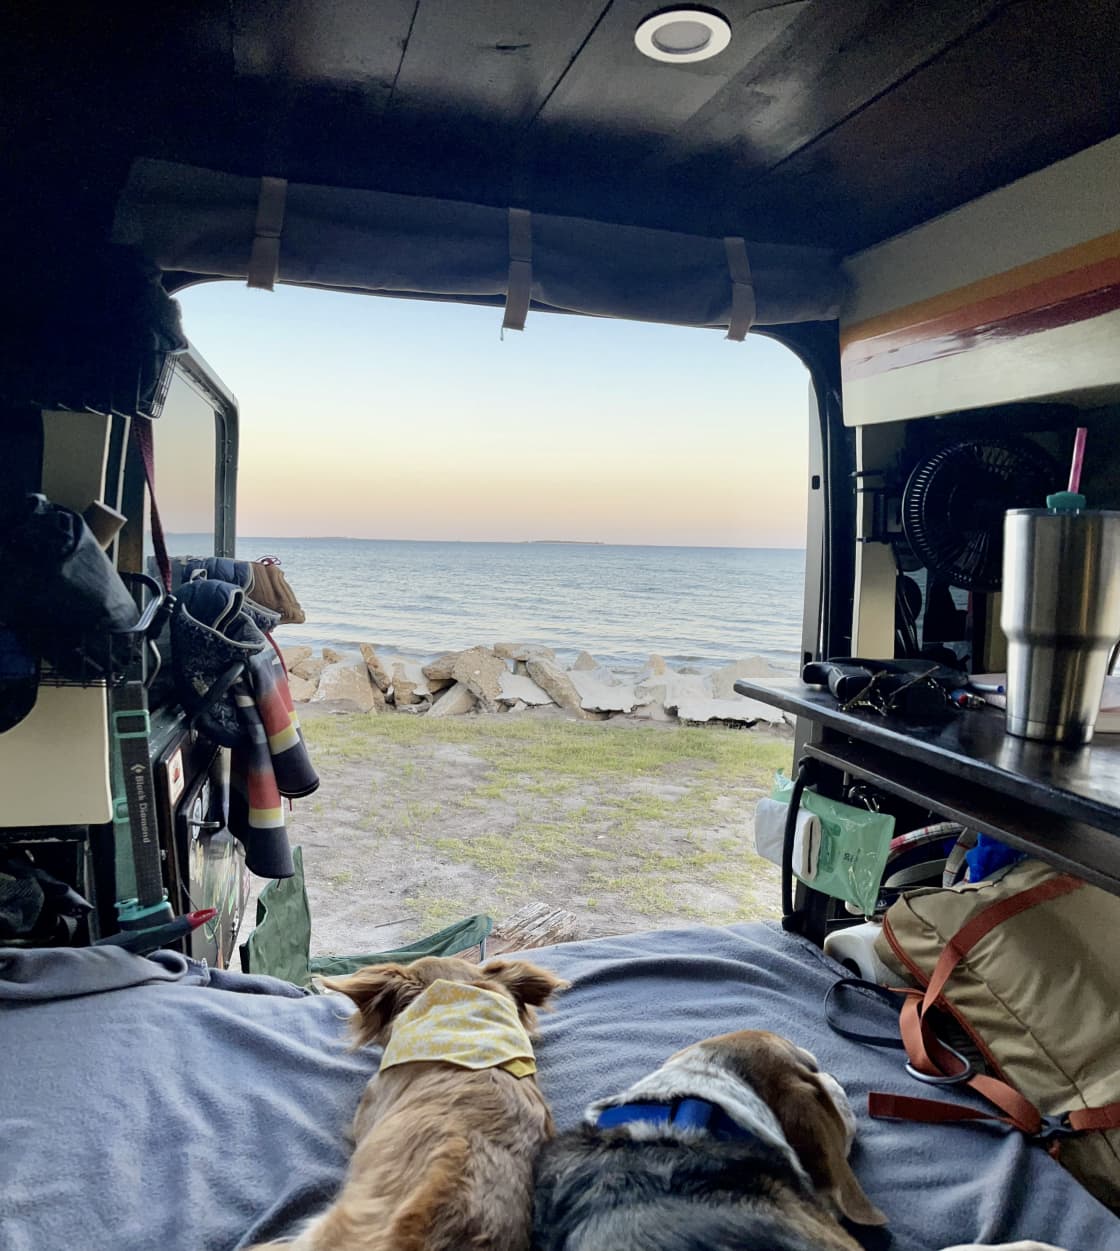 Bayside Camping